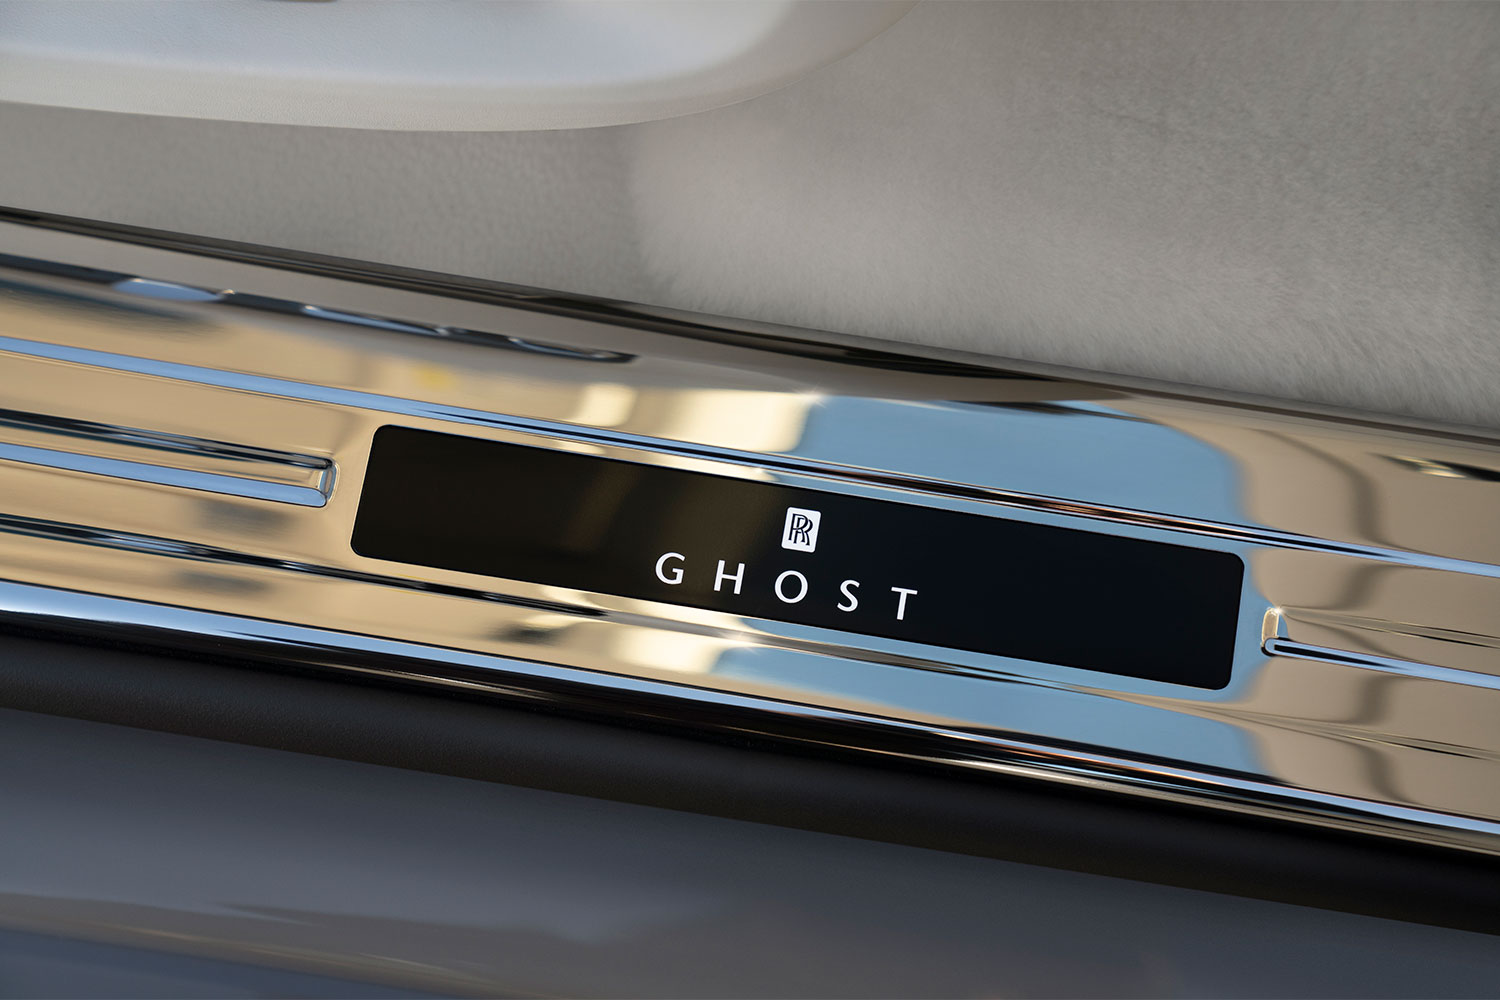 Rolls-Royce Ghost Reveal